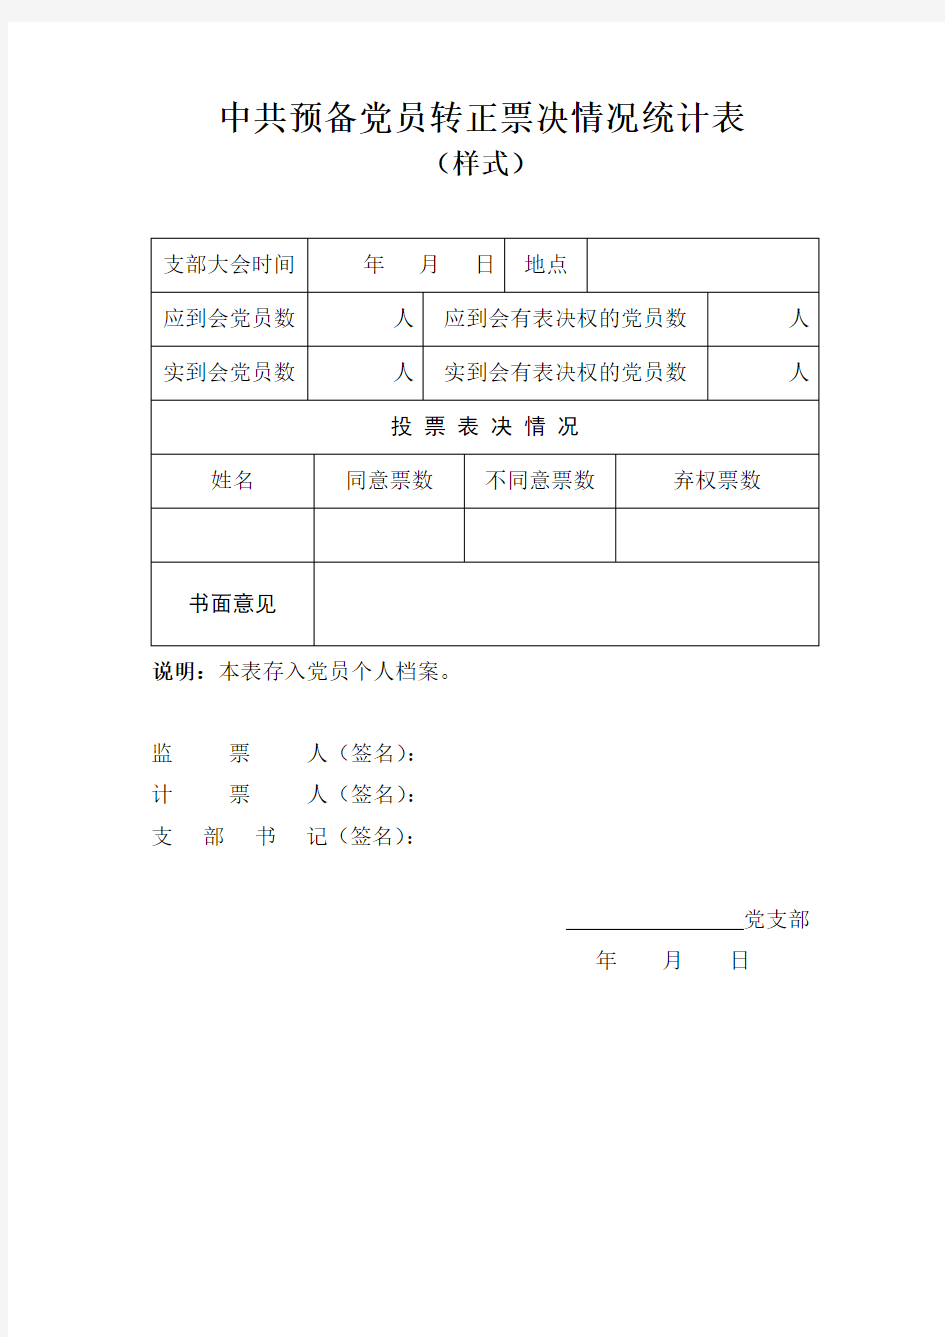 中共预备党员转正票决情况统计表